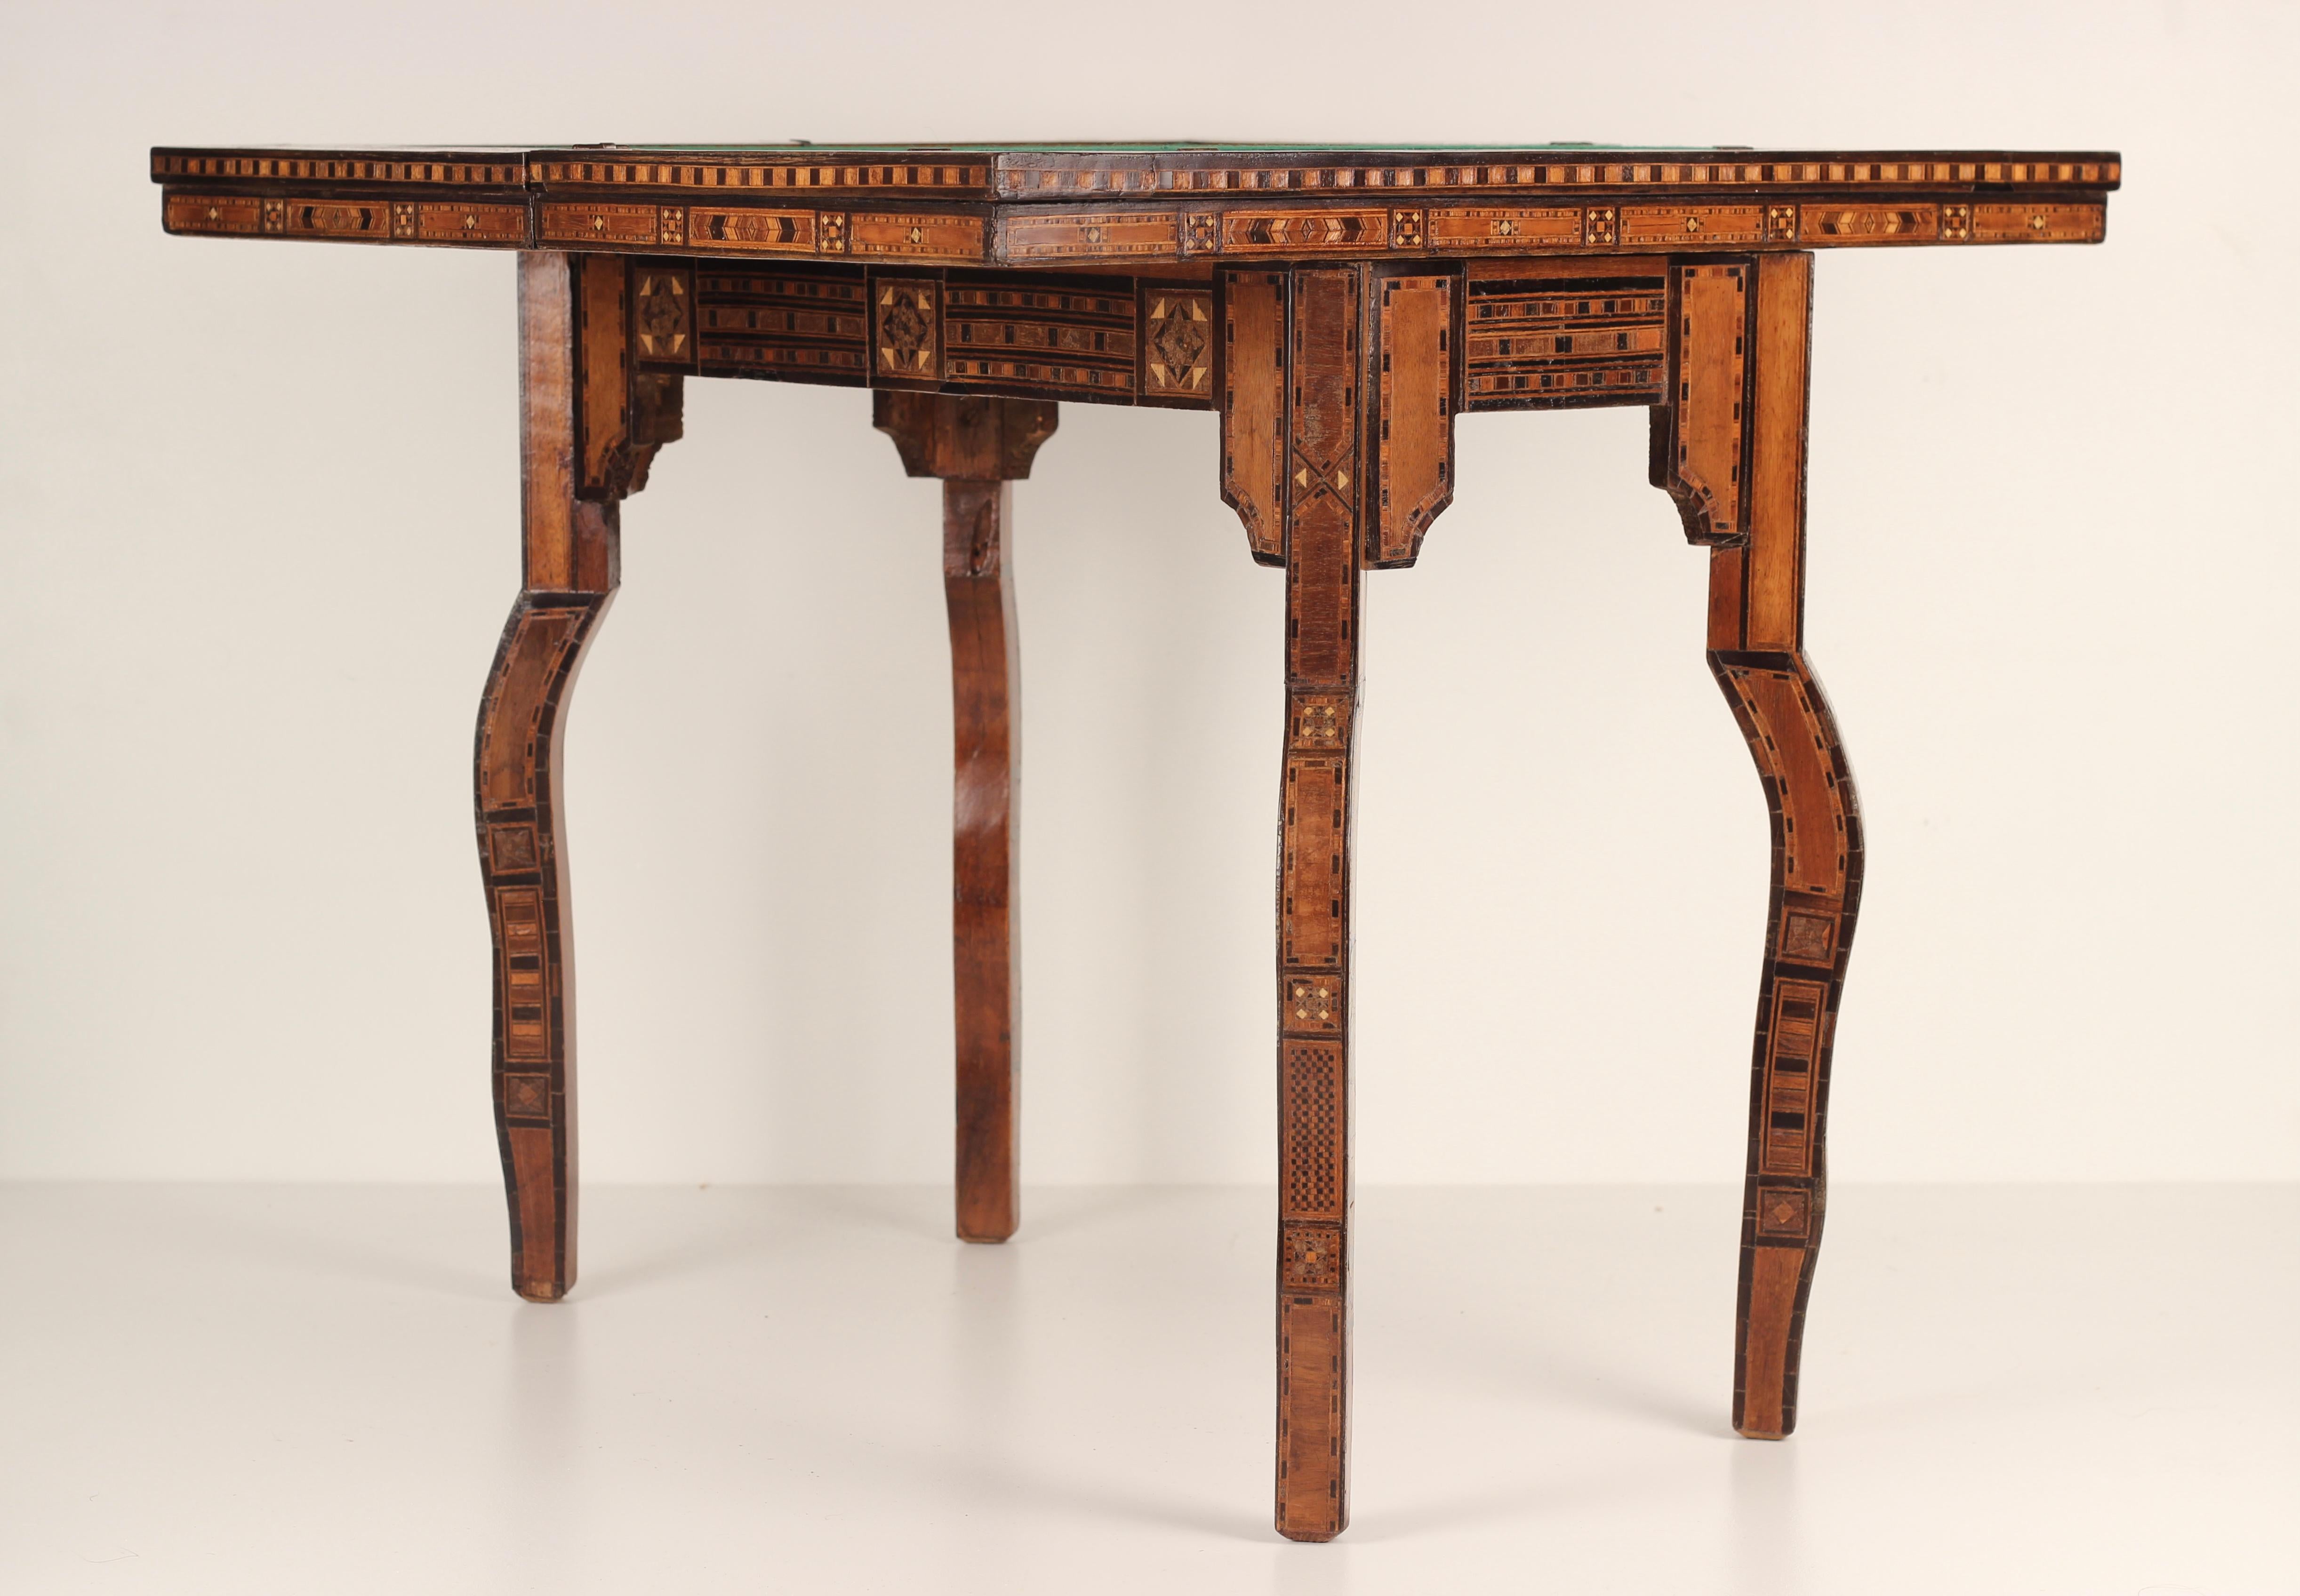 Ein feiner Spieltisch mit Intarsien und Mikromosaik, hergestellt in Syrien um die Wende vom 19. zum frühen 20. Jahrhundert. Komplett mit einem Kartentisch aus Filz, einem Schach-/Drafts-Brett und einem Gammon-Brett auf der Rückseite, dessen drehbare